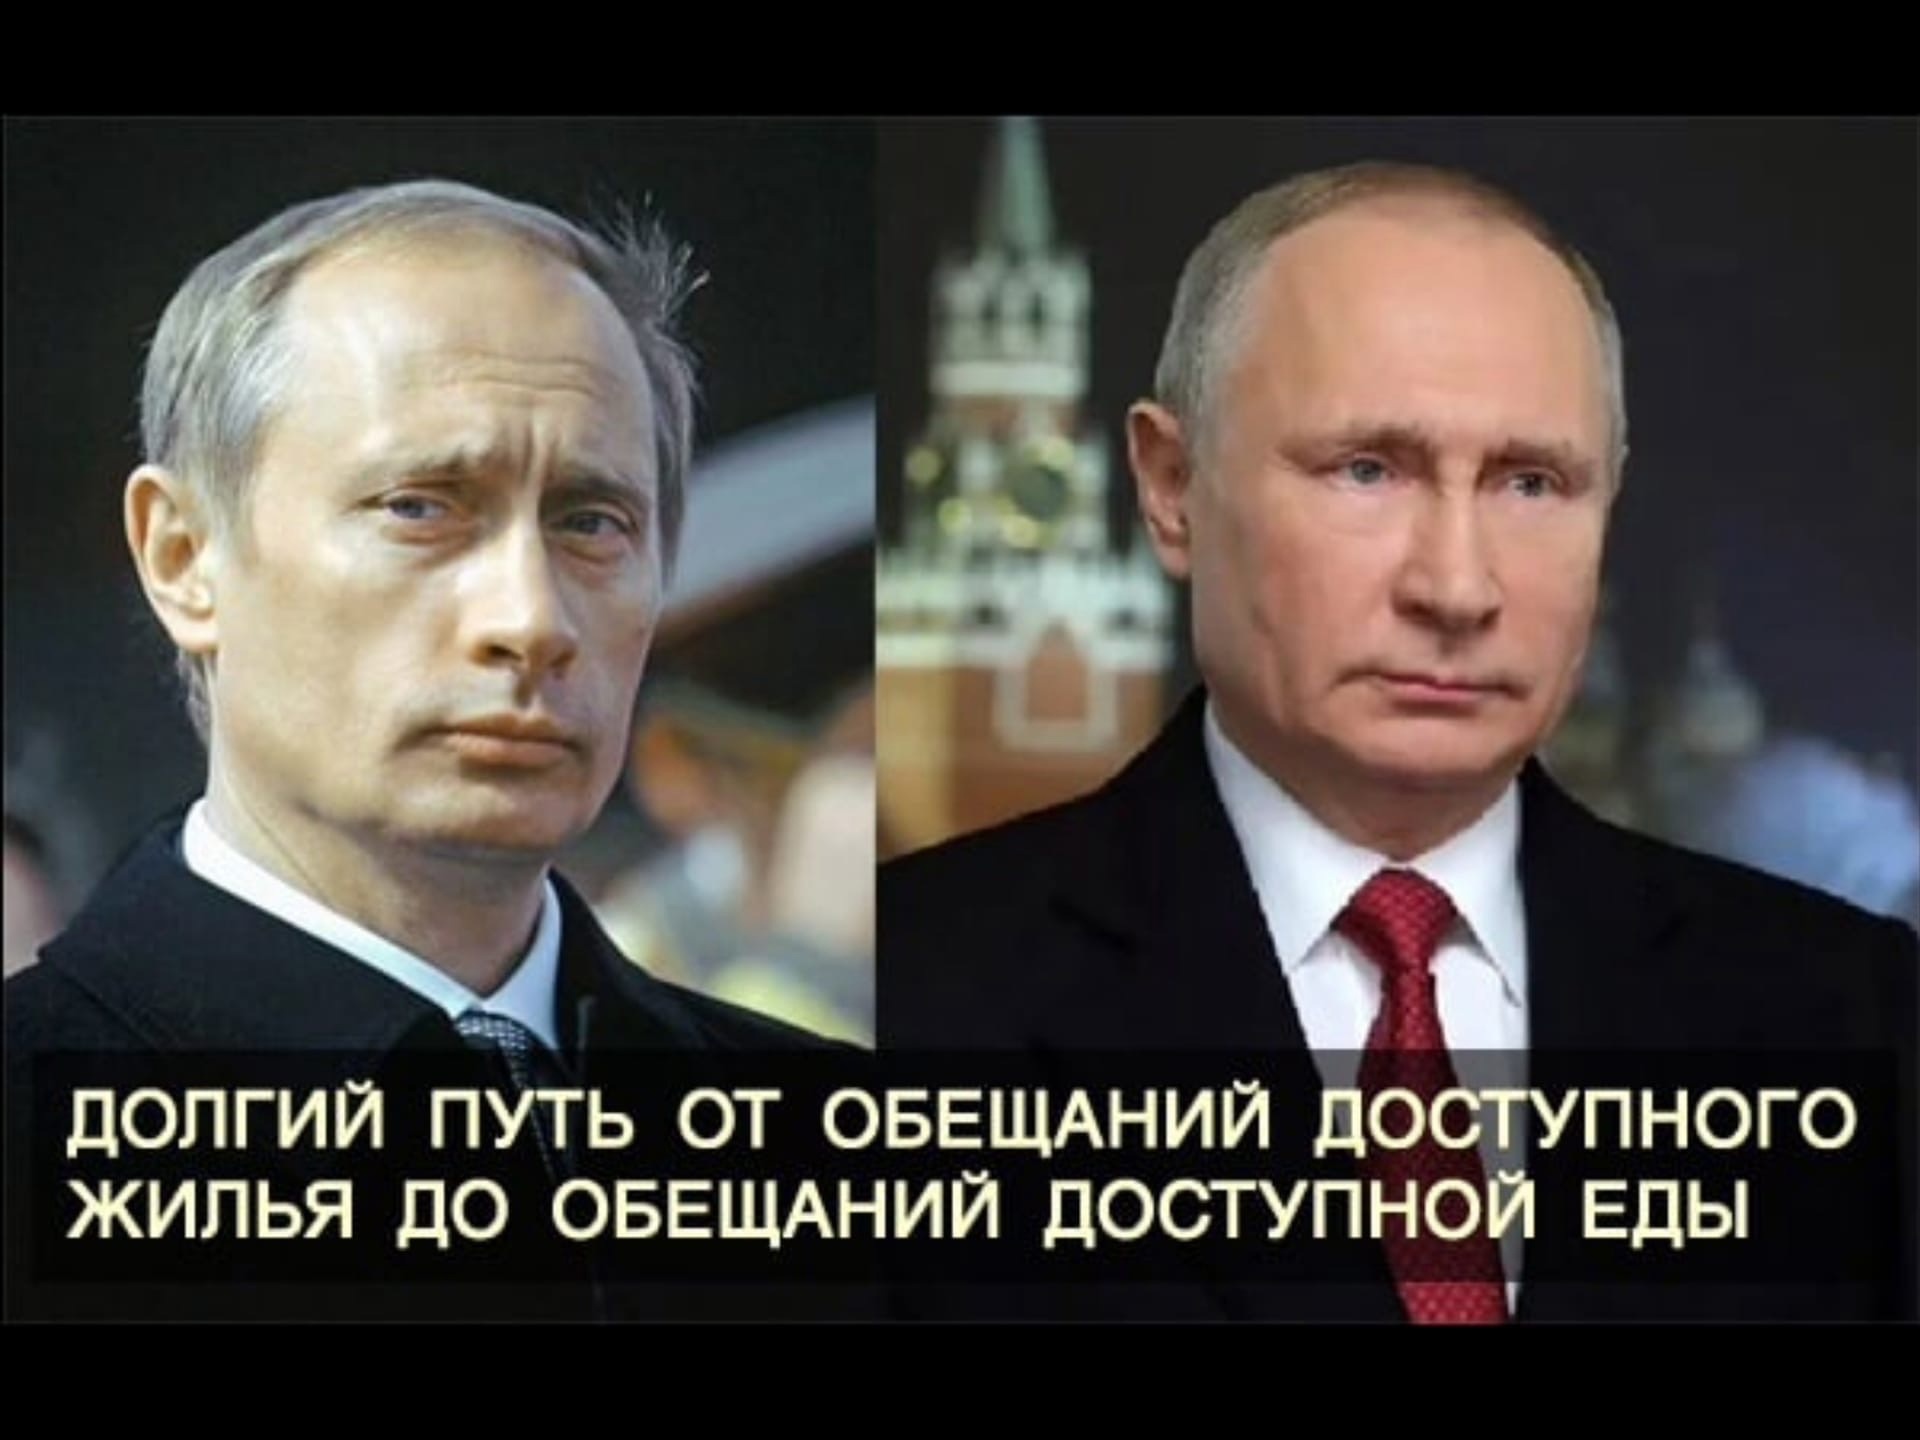 Много путиных. Путин Владимир Владимирович 2000. Путин Владимир Владимирович в 2000 и сейчас. Путин Владимир Владимирович 2000-2022. Путин 2000 и 2022.